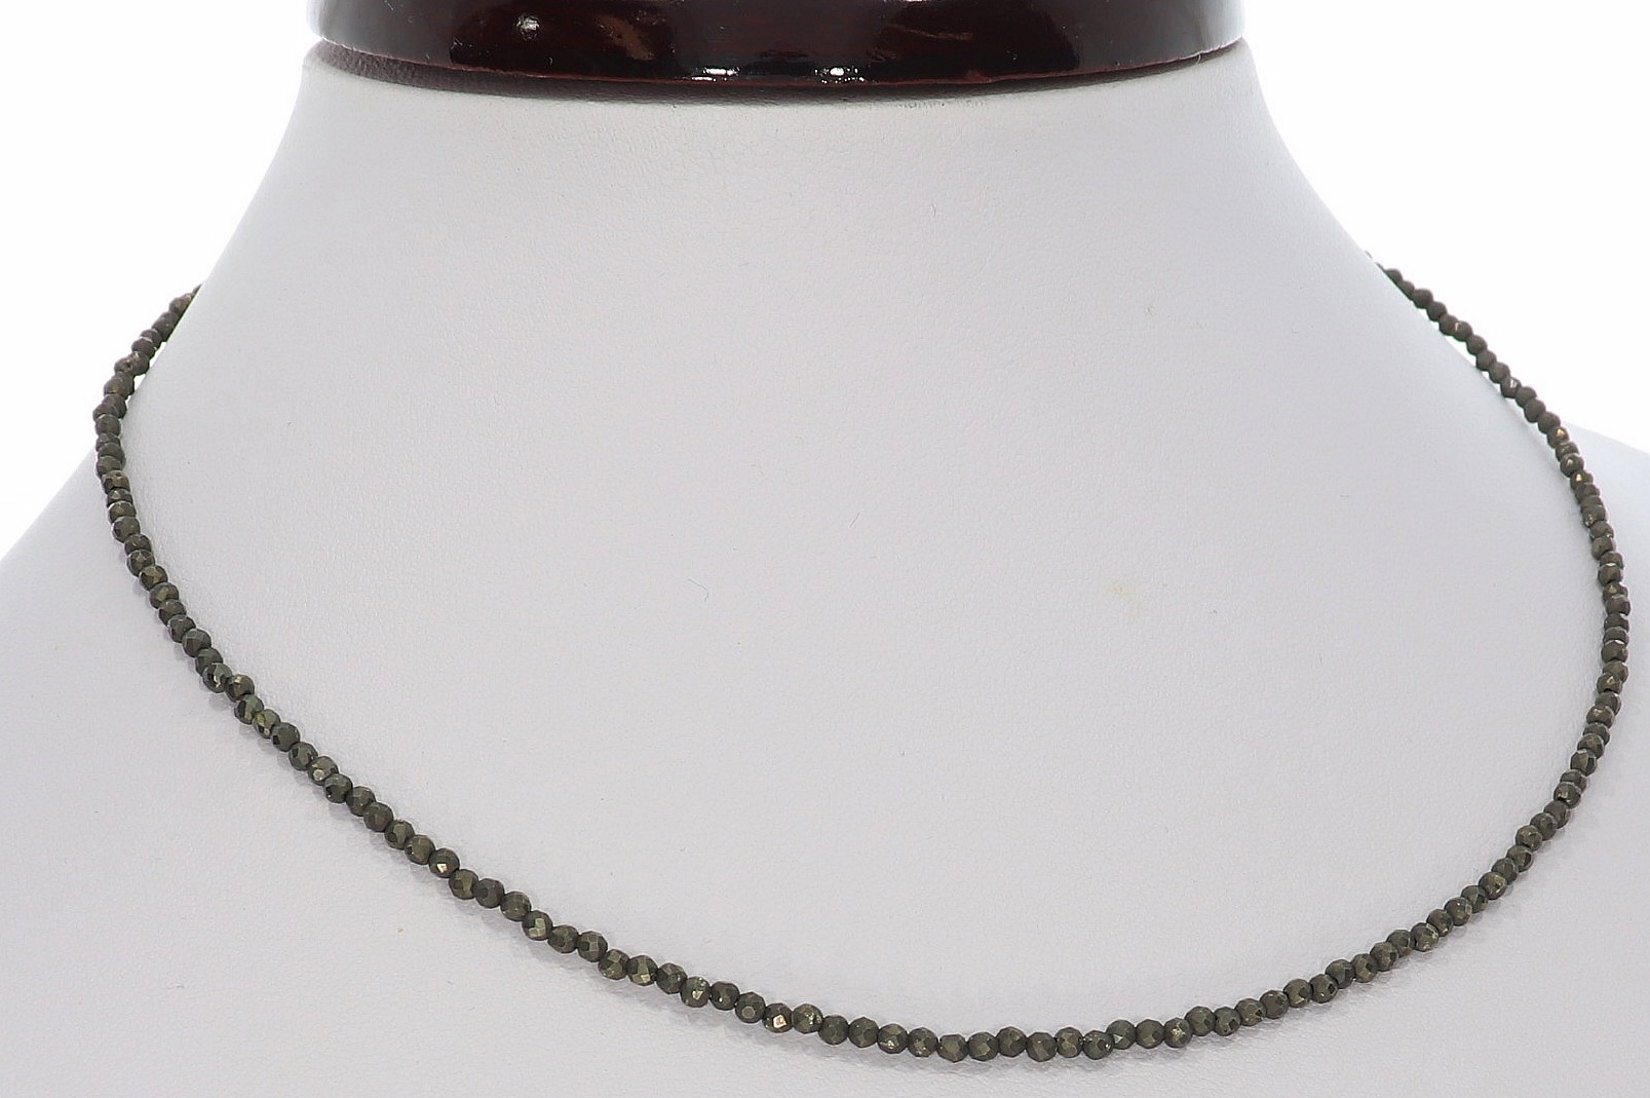 Pyrit Kugel Halskette facettiert Silber farben 2mm - 40-45cm Kettenverlängerer KK300